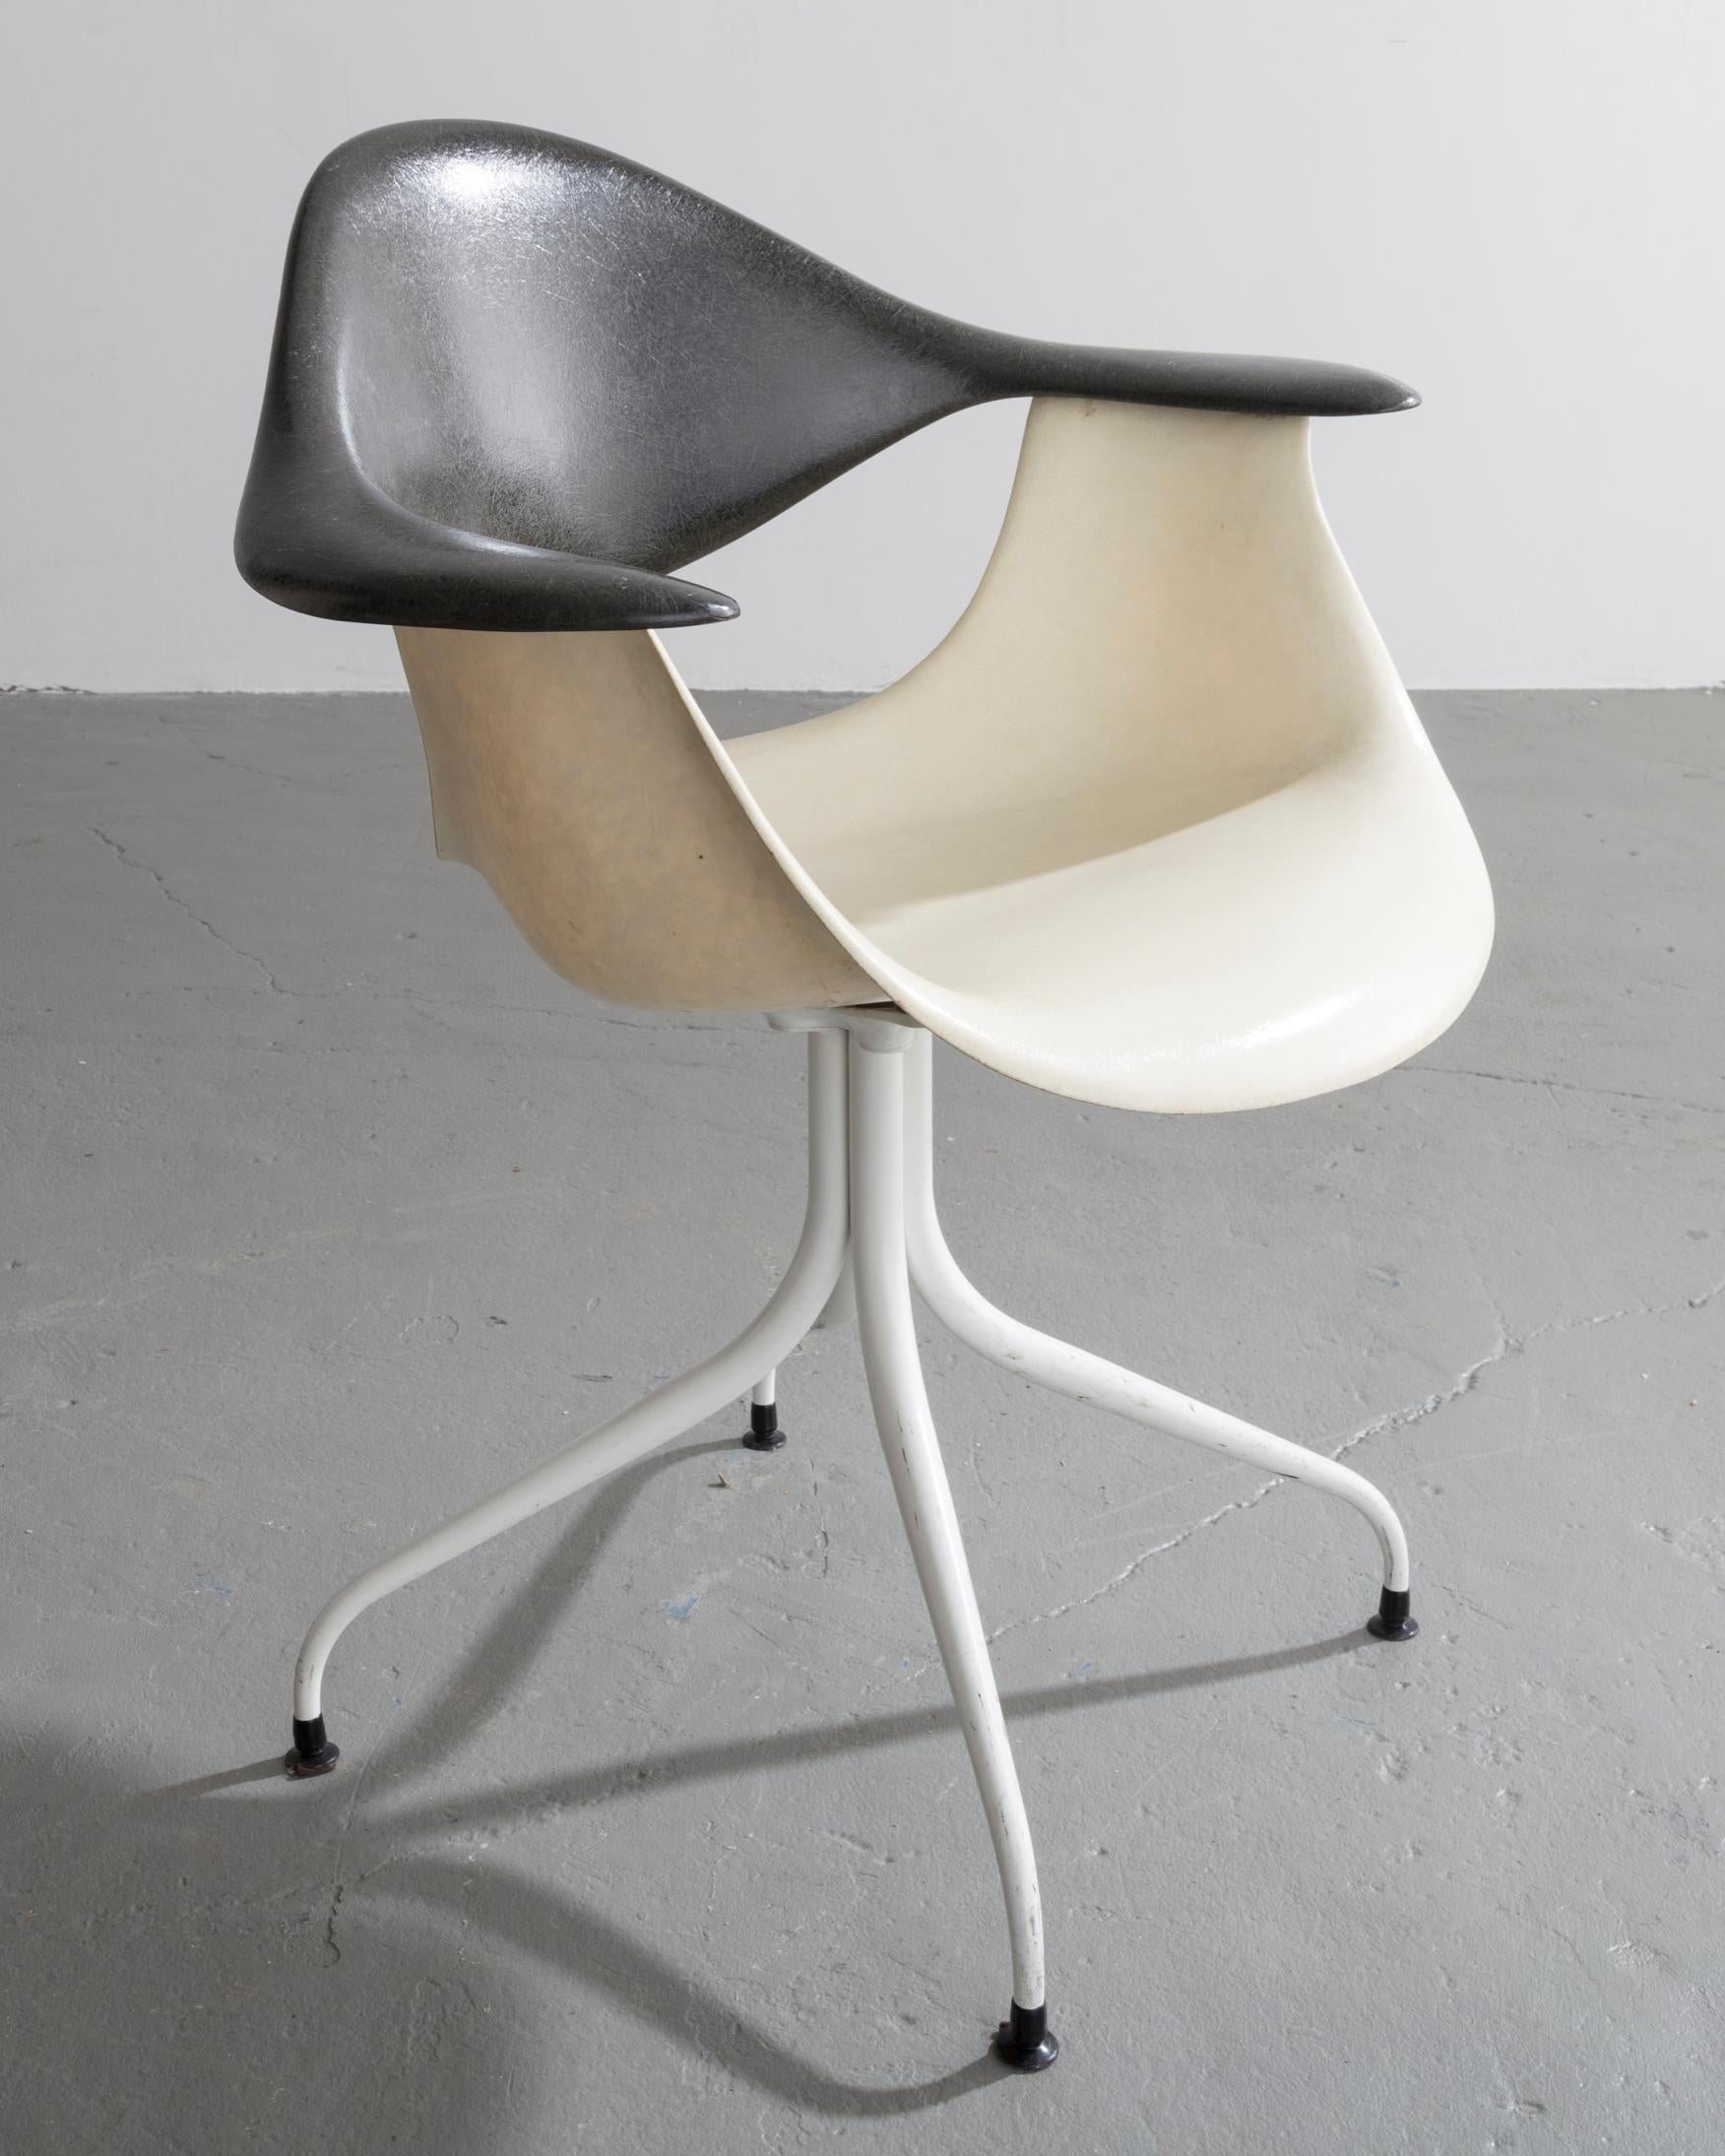 Stuhl mit gebogenen Beinen, Modell MAF, aus Fiberglas, emailliertem Stahl, Gummi, emailliertem Aluminium und Kunststoff. Entworfen von George Nelson & Associates für Herman Miller, USA, 1954.